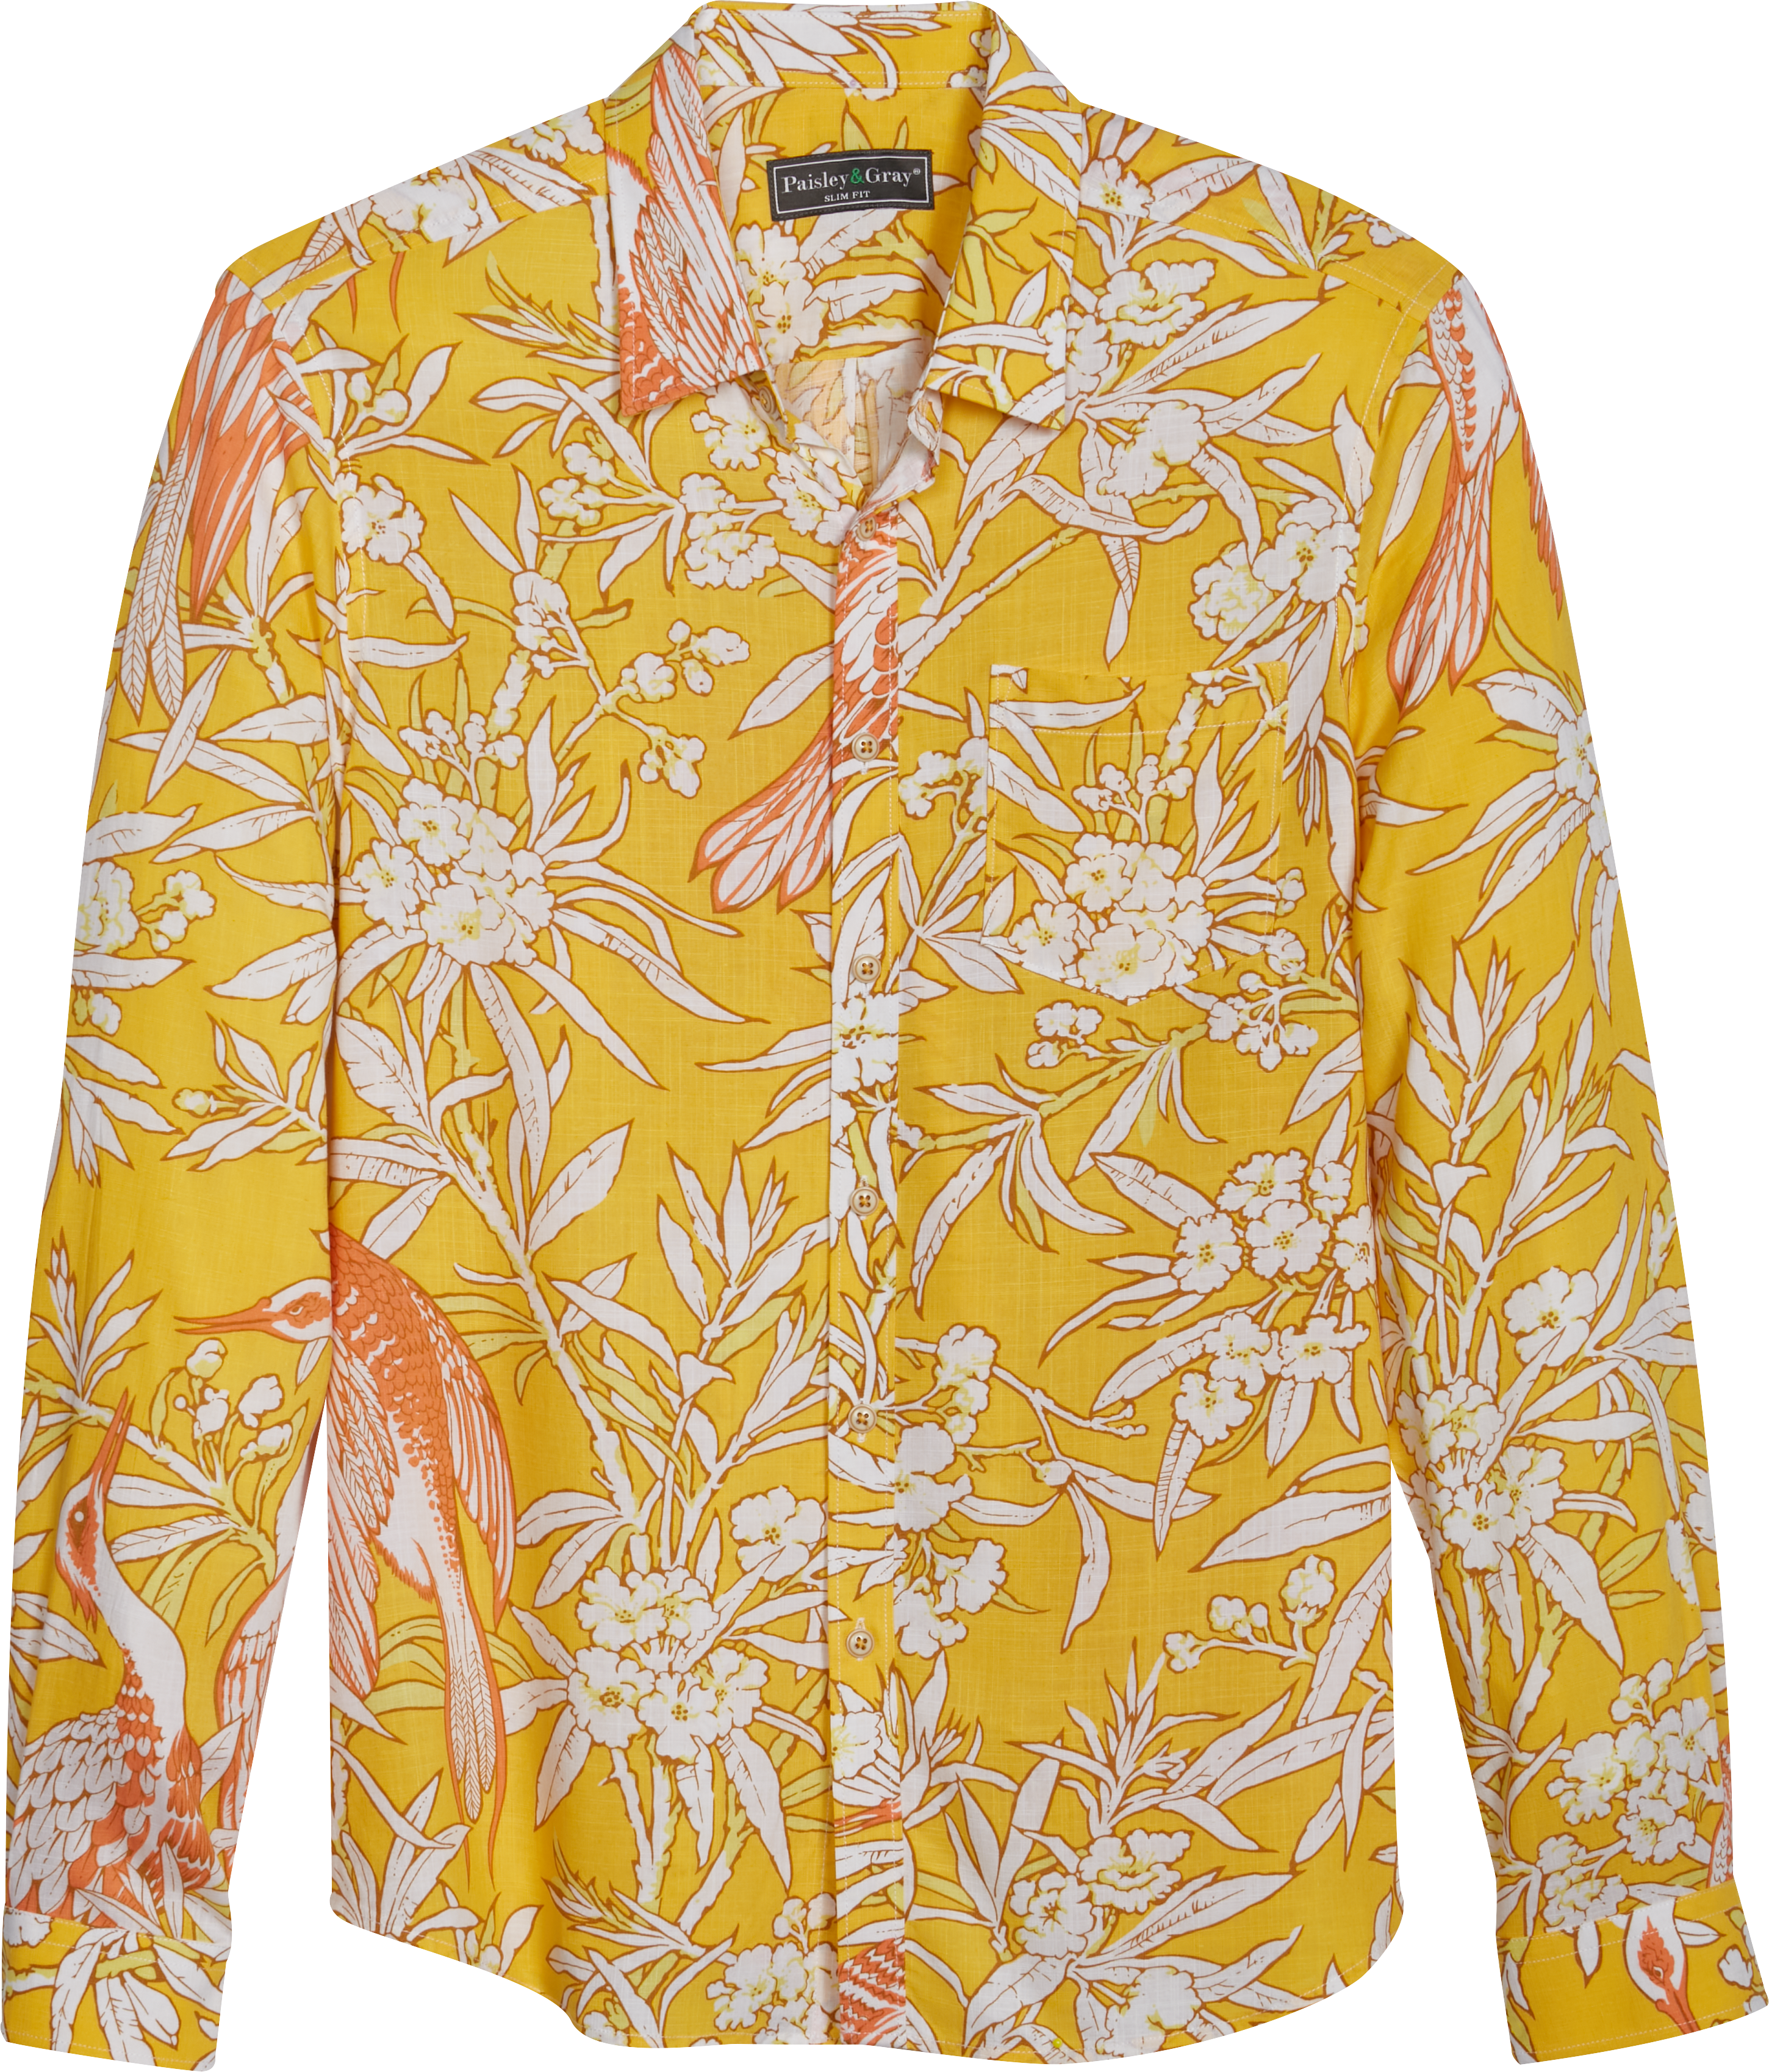 Roundtree & Yorke Gray Hawaiian Shirts for Men